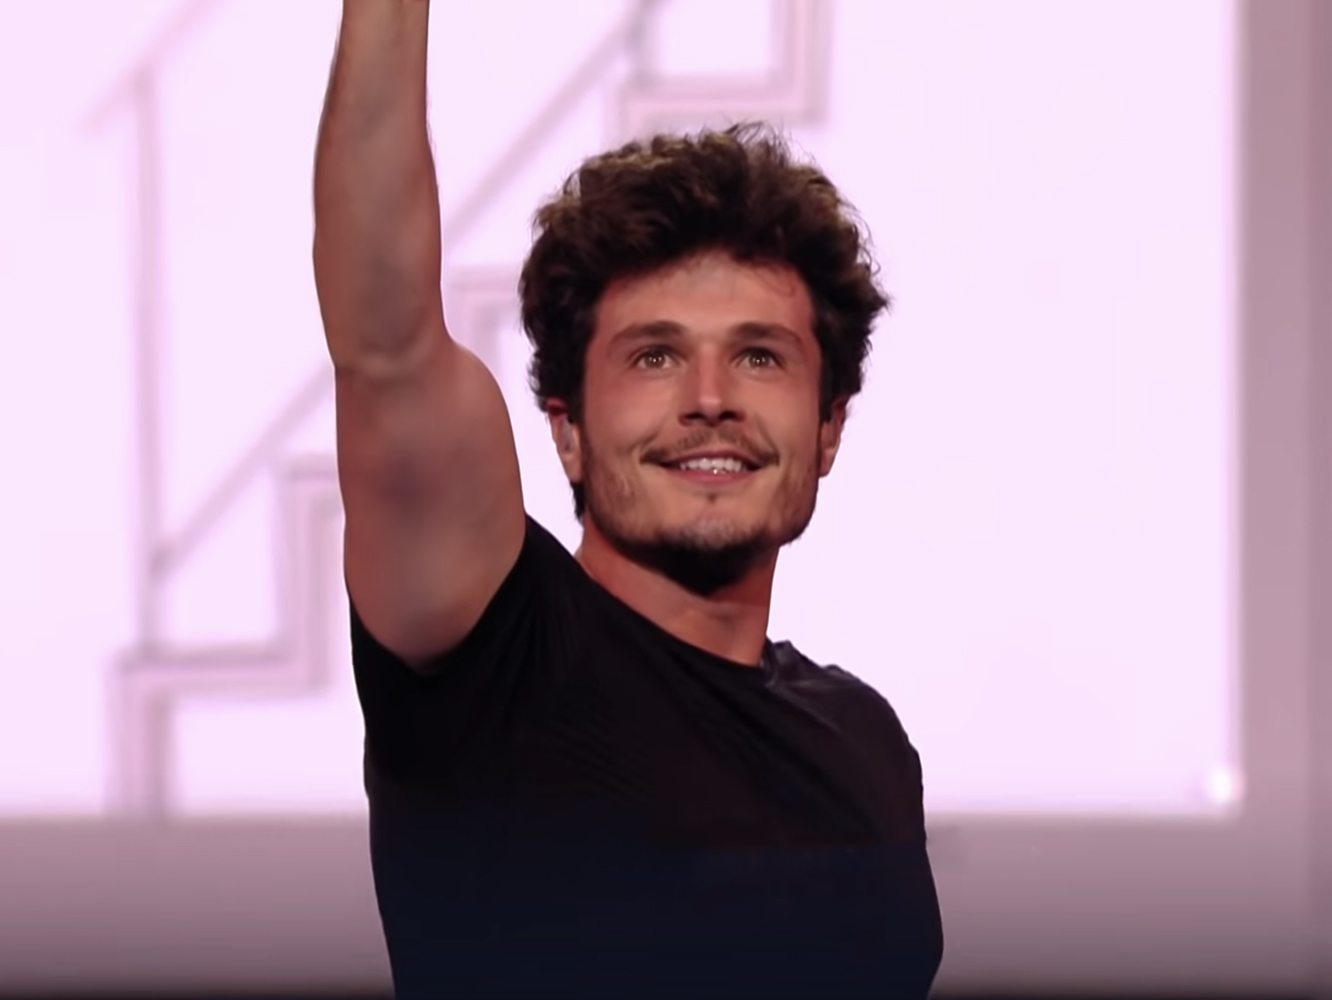  Actuación completa de Miki en Eurovisión 2019: así suena y se ve ‘La Venda’